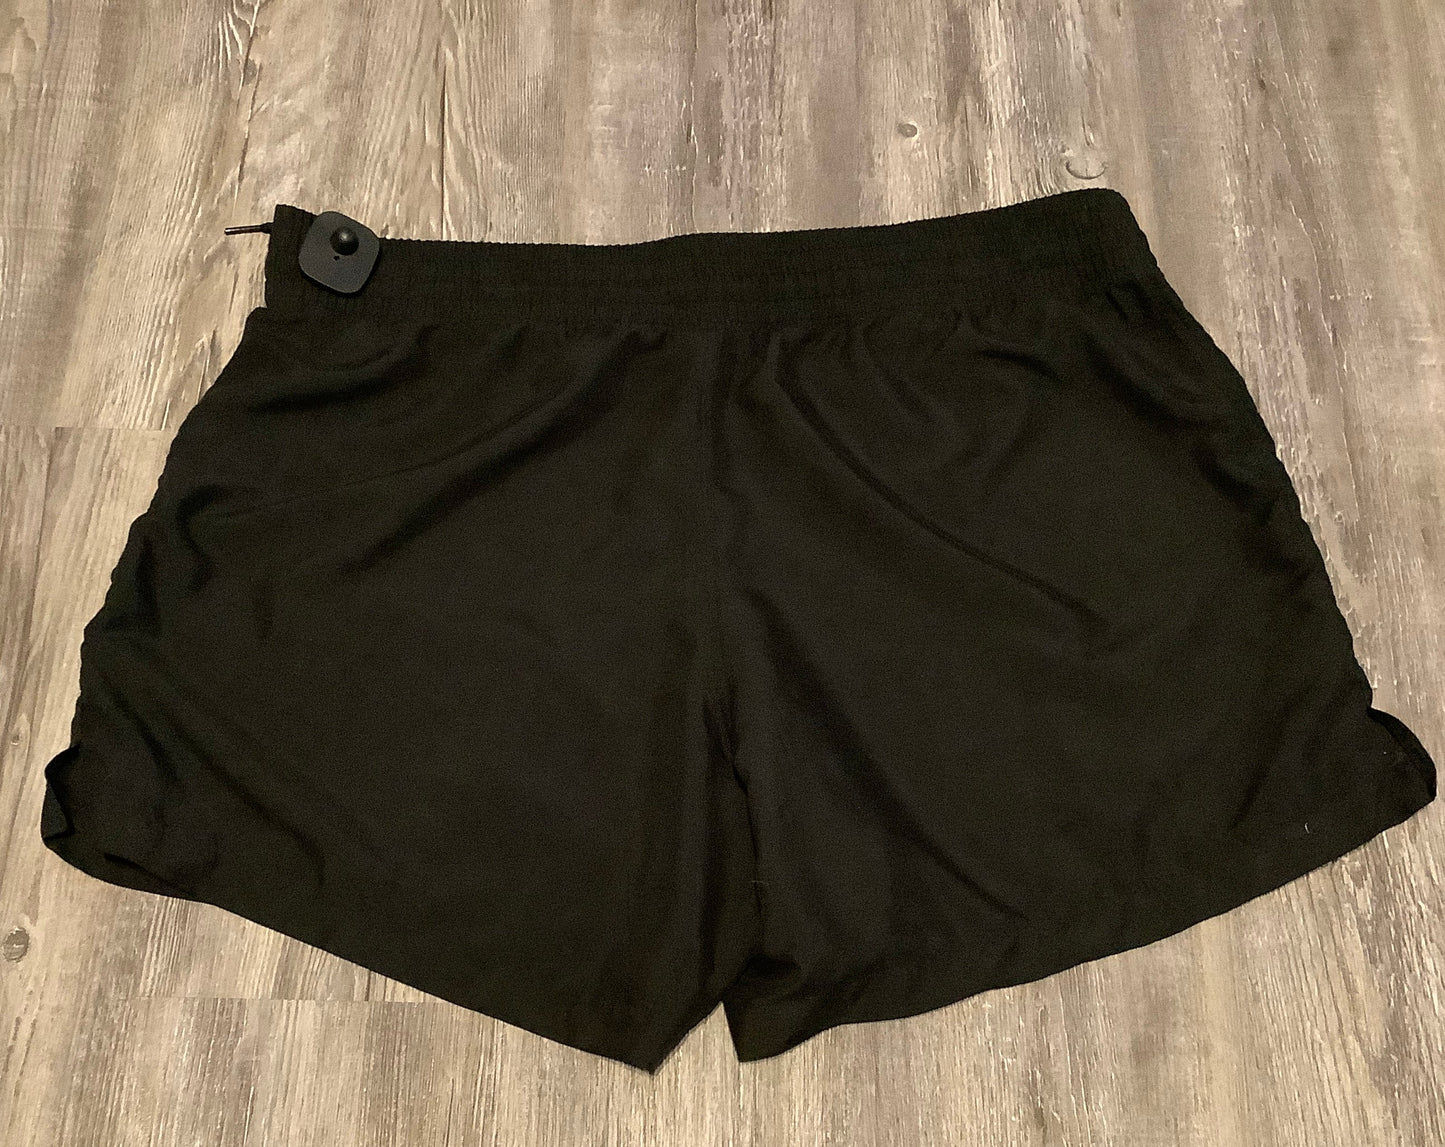 Shorts By Kona Sol  Size: 16w